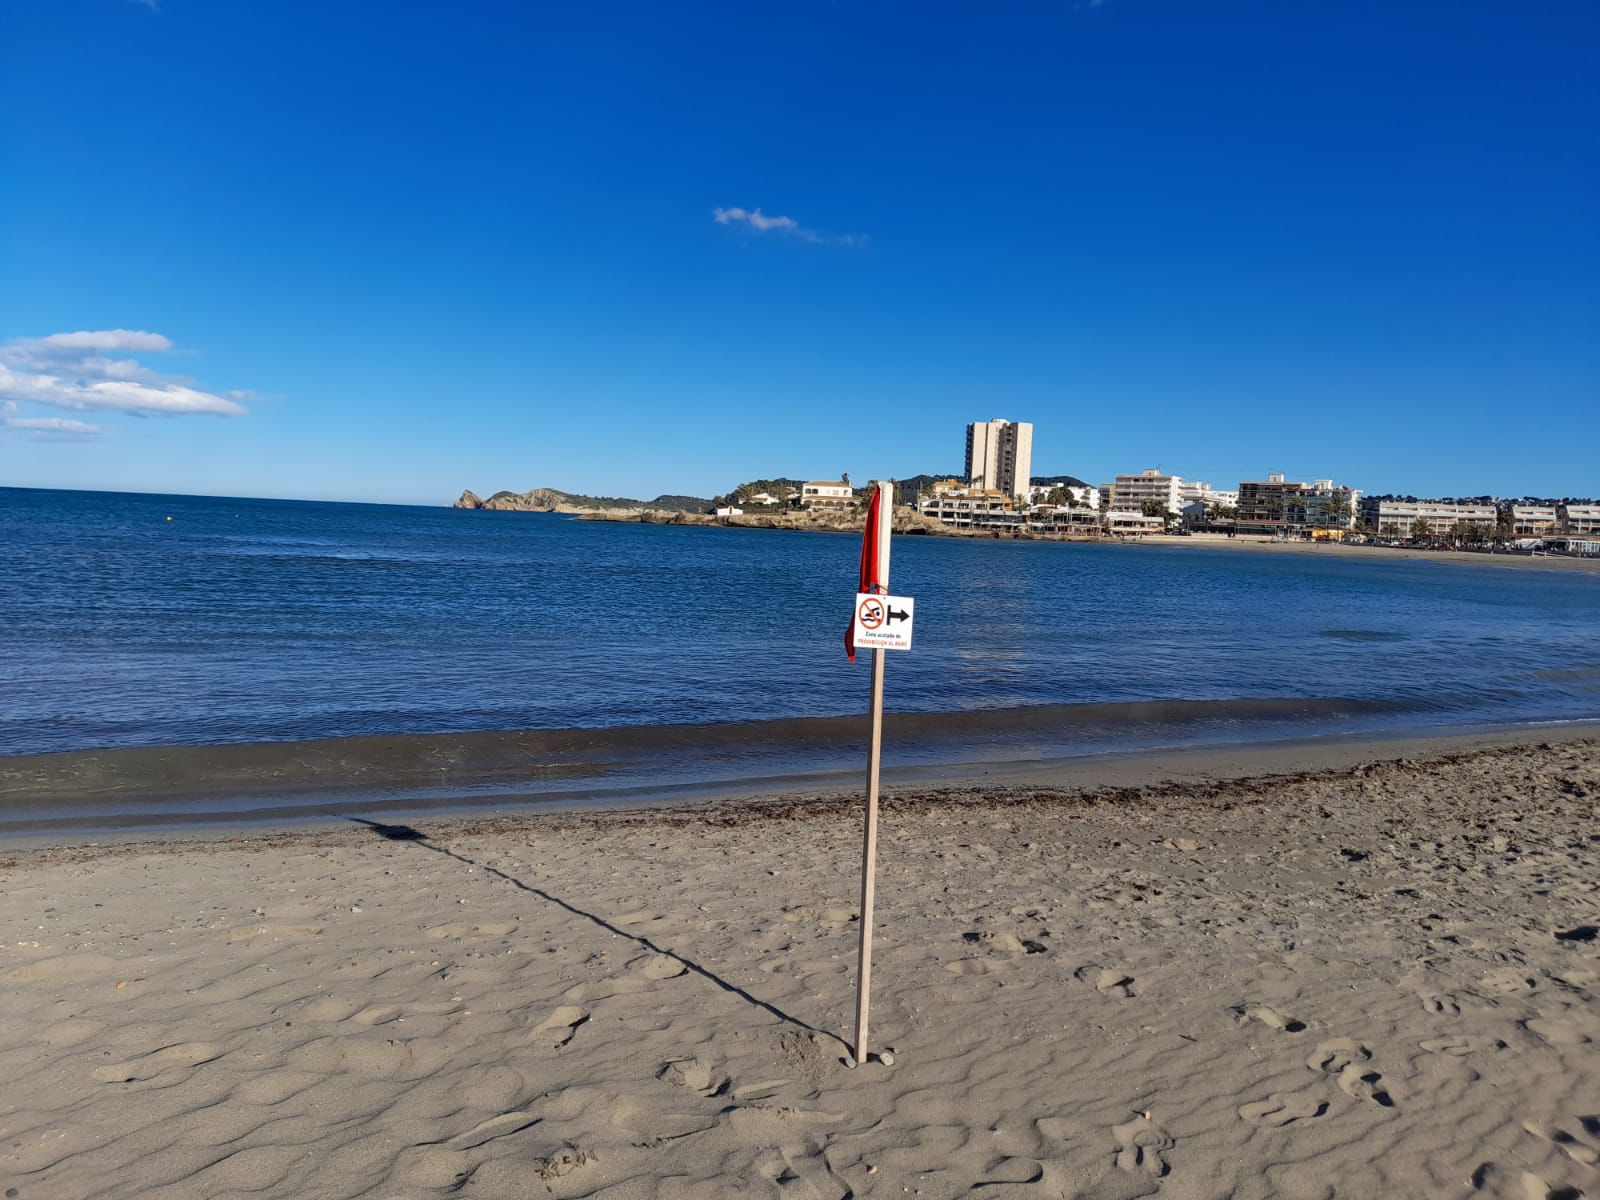 Foto de archivo de la playa del Arenal